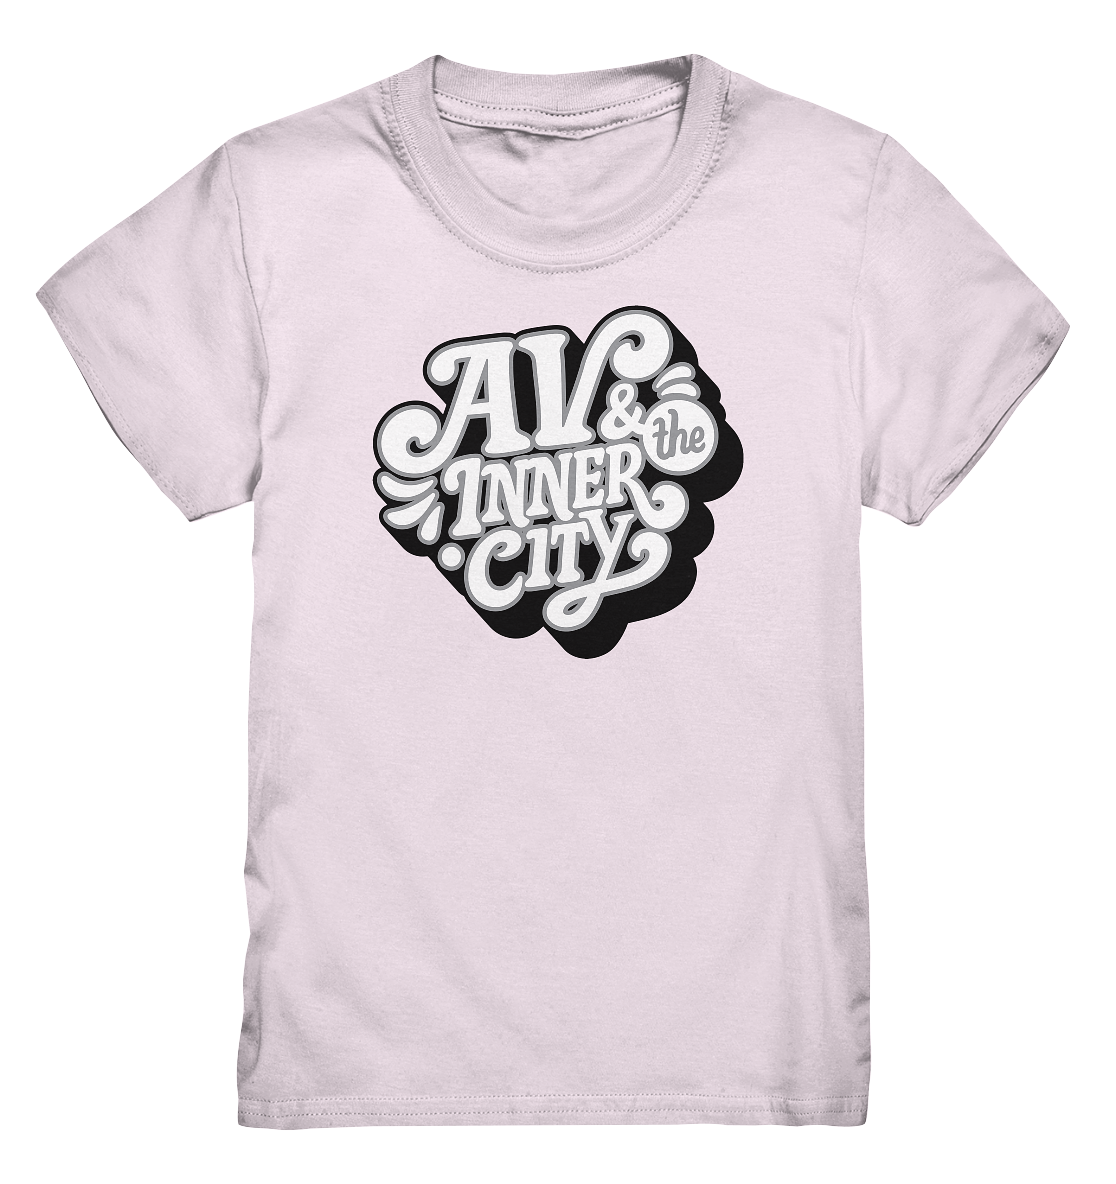 AV & the Inner City / Black - Kids Premium Shirt